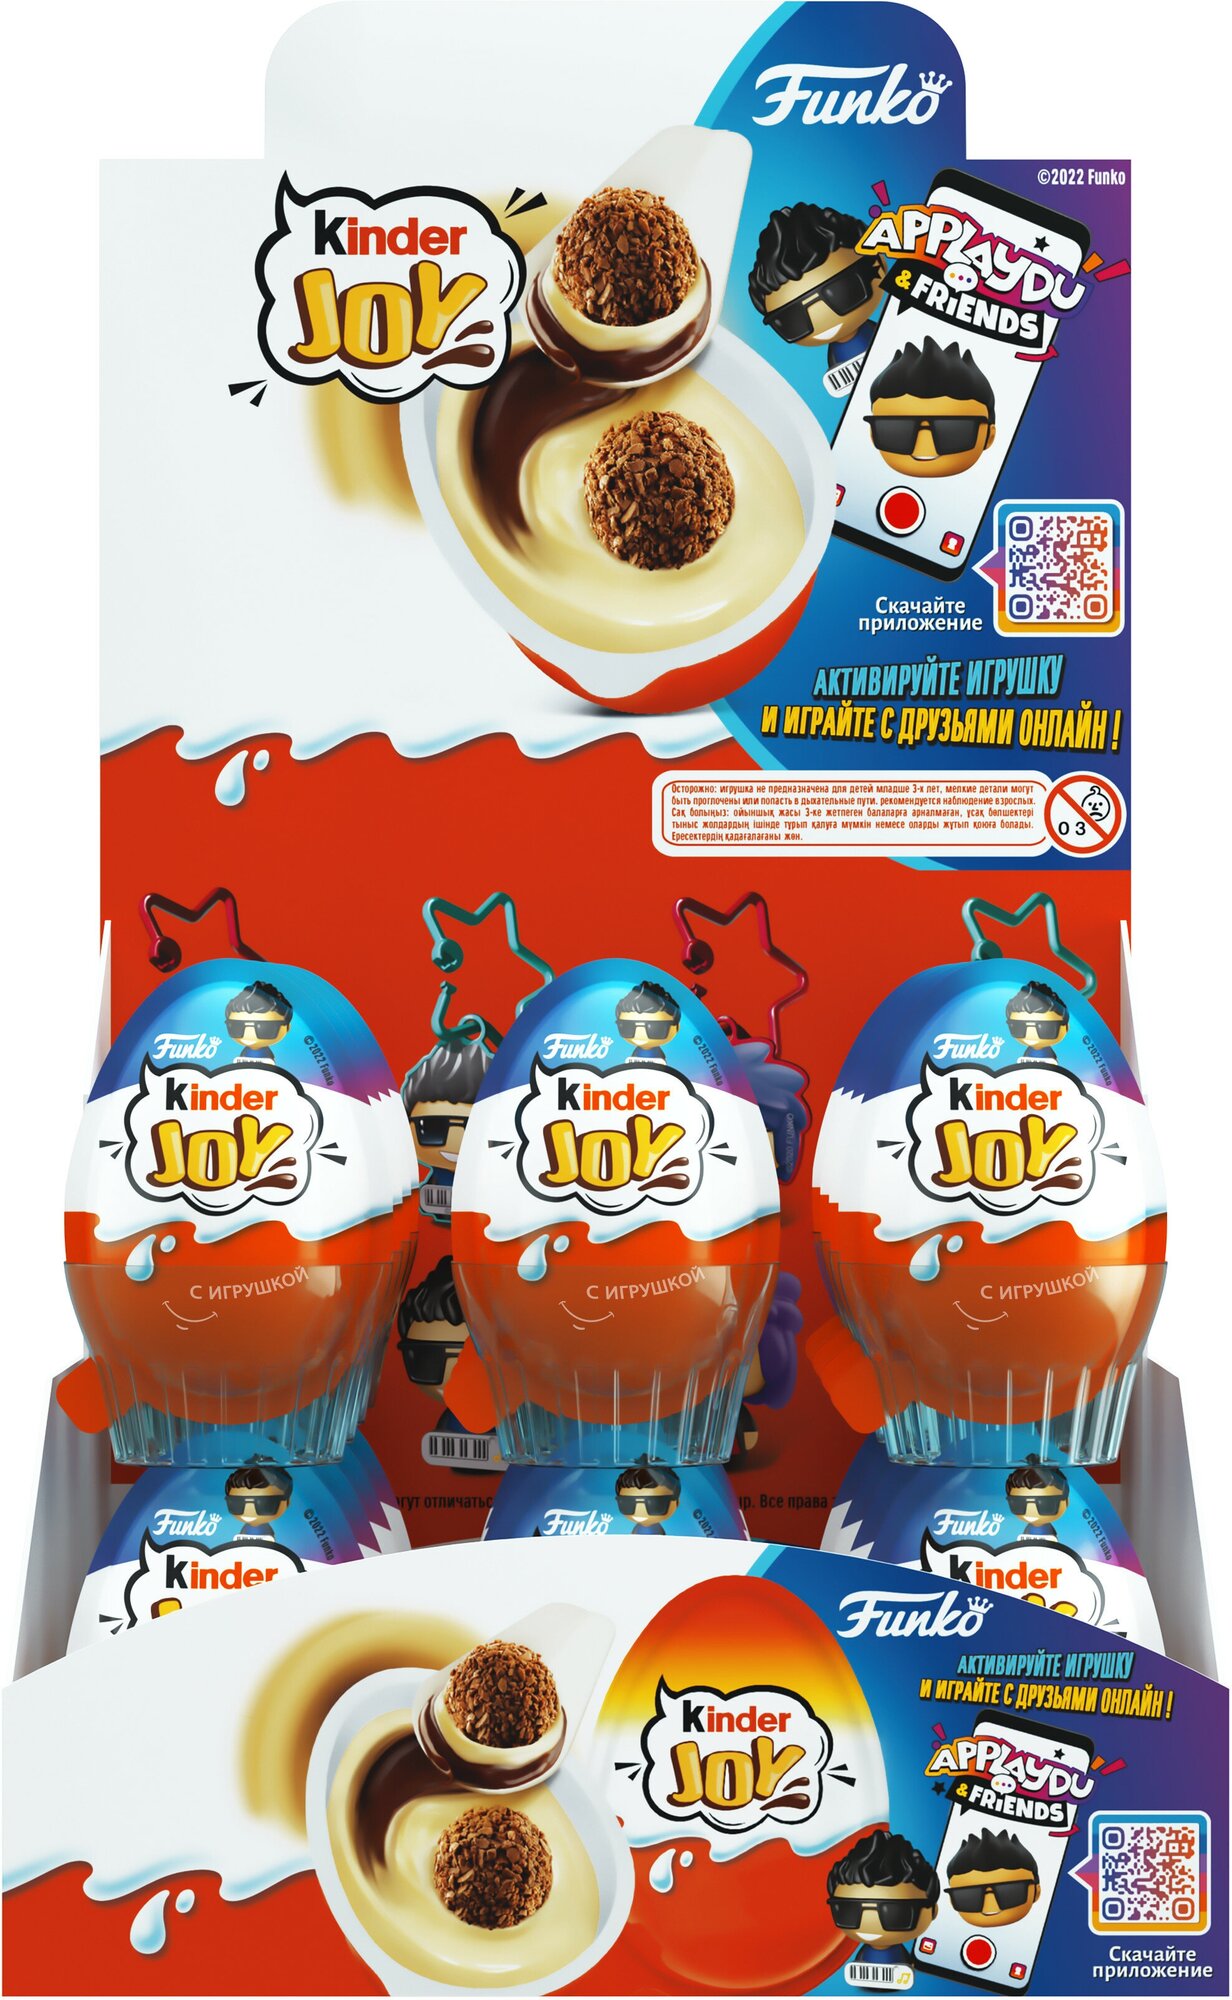 Кондитерское изделие Kinder Joy с игрушкой: вдухслойная паста на основе молока и какао и вафельные шарики, покрытые какао, с молочным кремом внутри, 20гх24шт., серия для мальчиков - фотография № 3